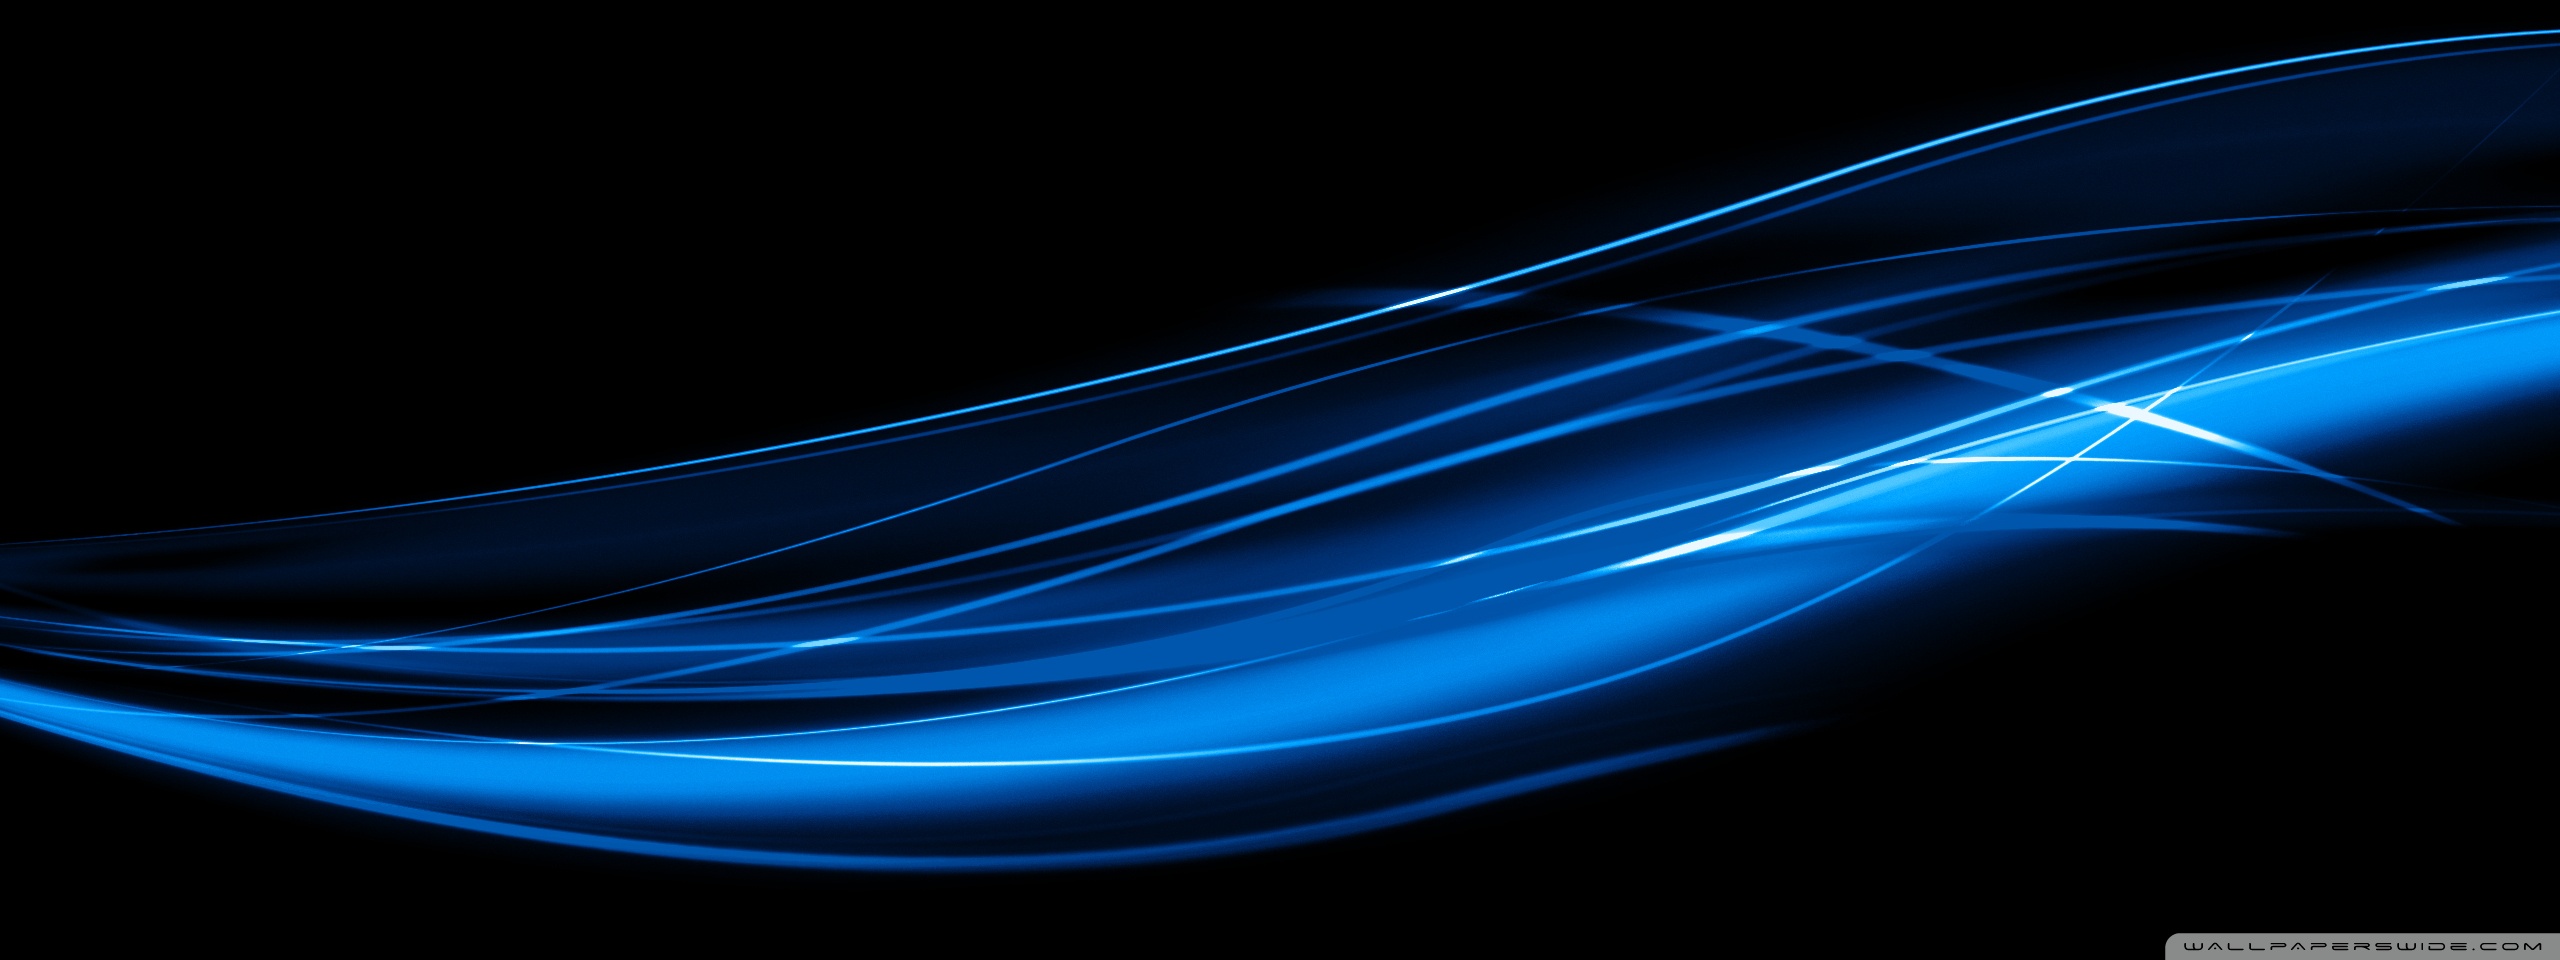 Blue Wavy Lines 4k HD Desktop Wallpaper For Ultra